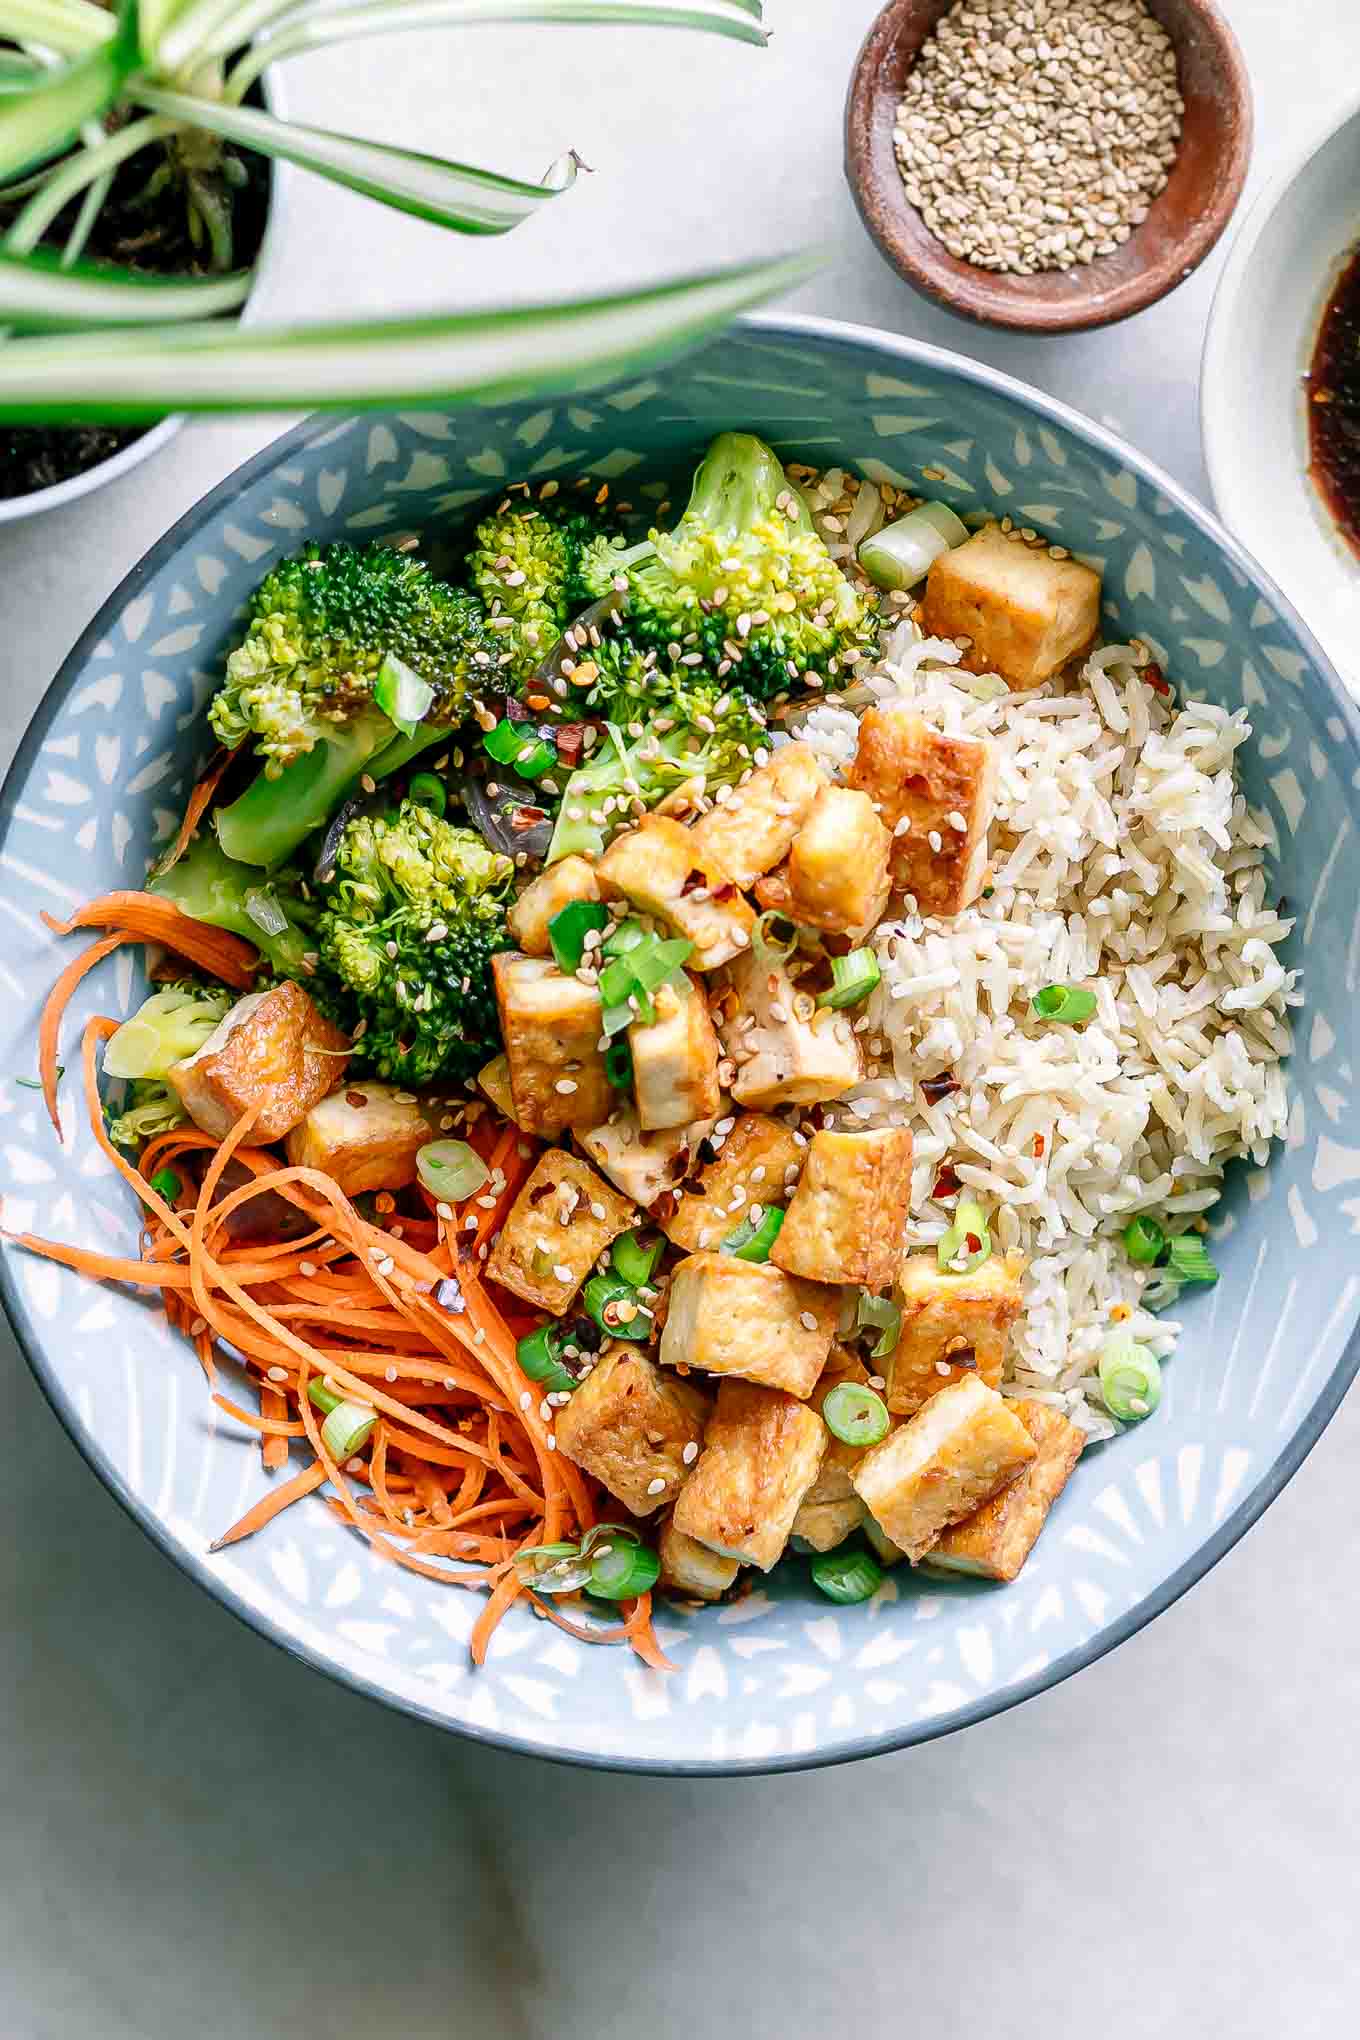 Roasted tofu, brokkoli, and rice